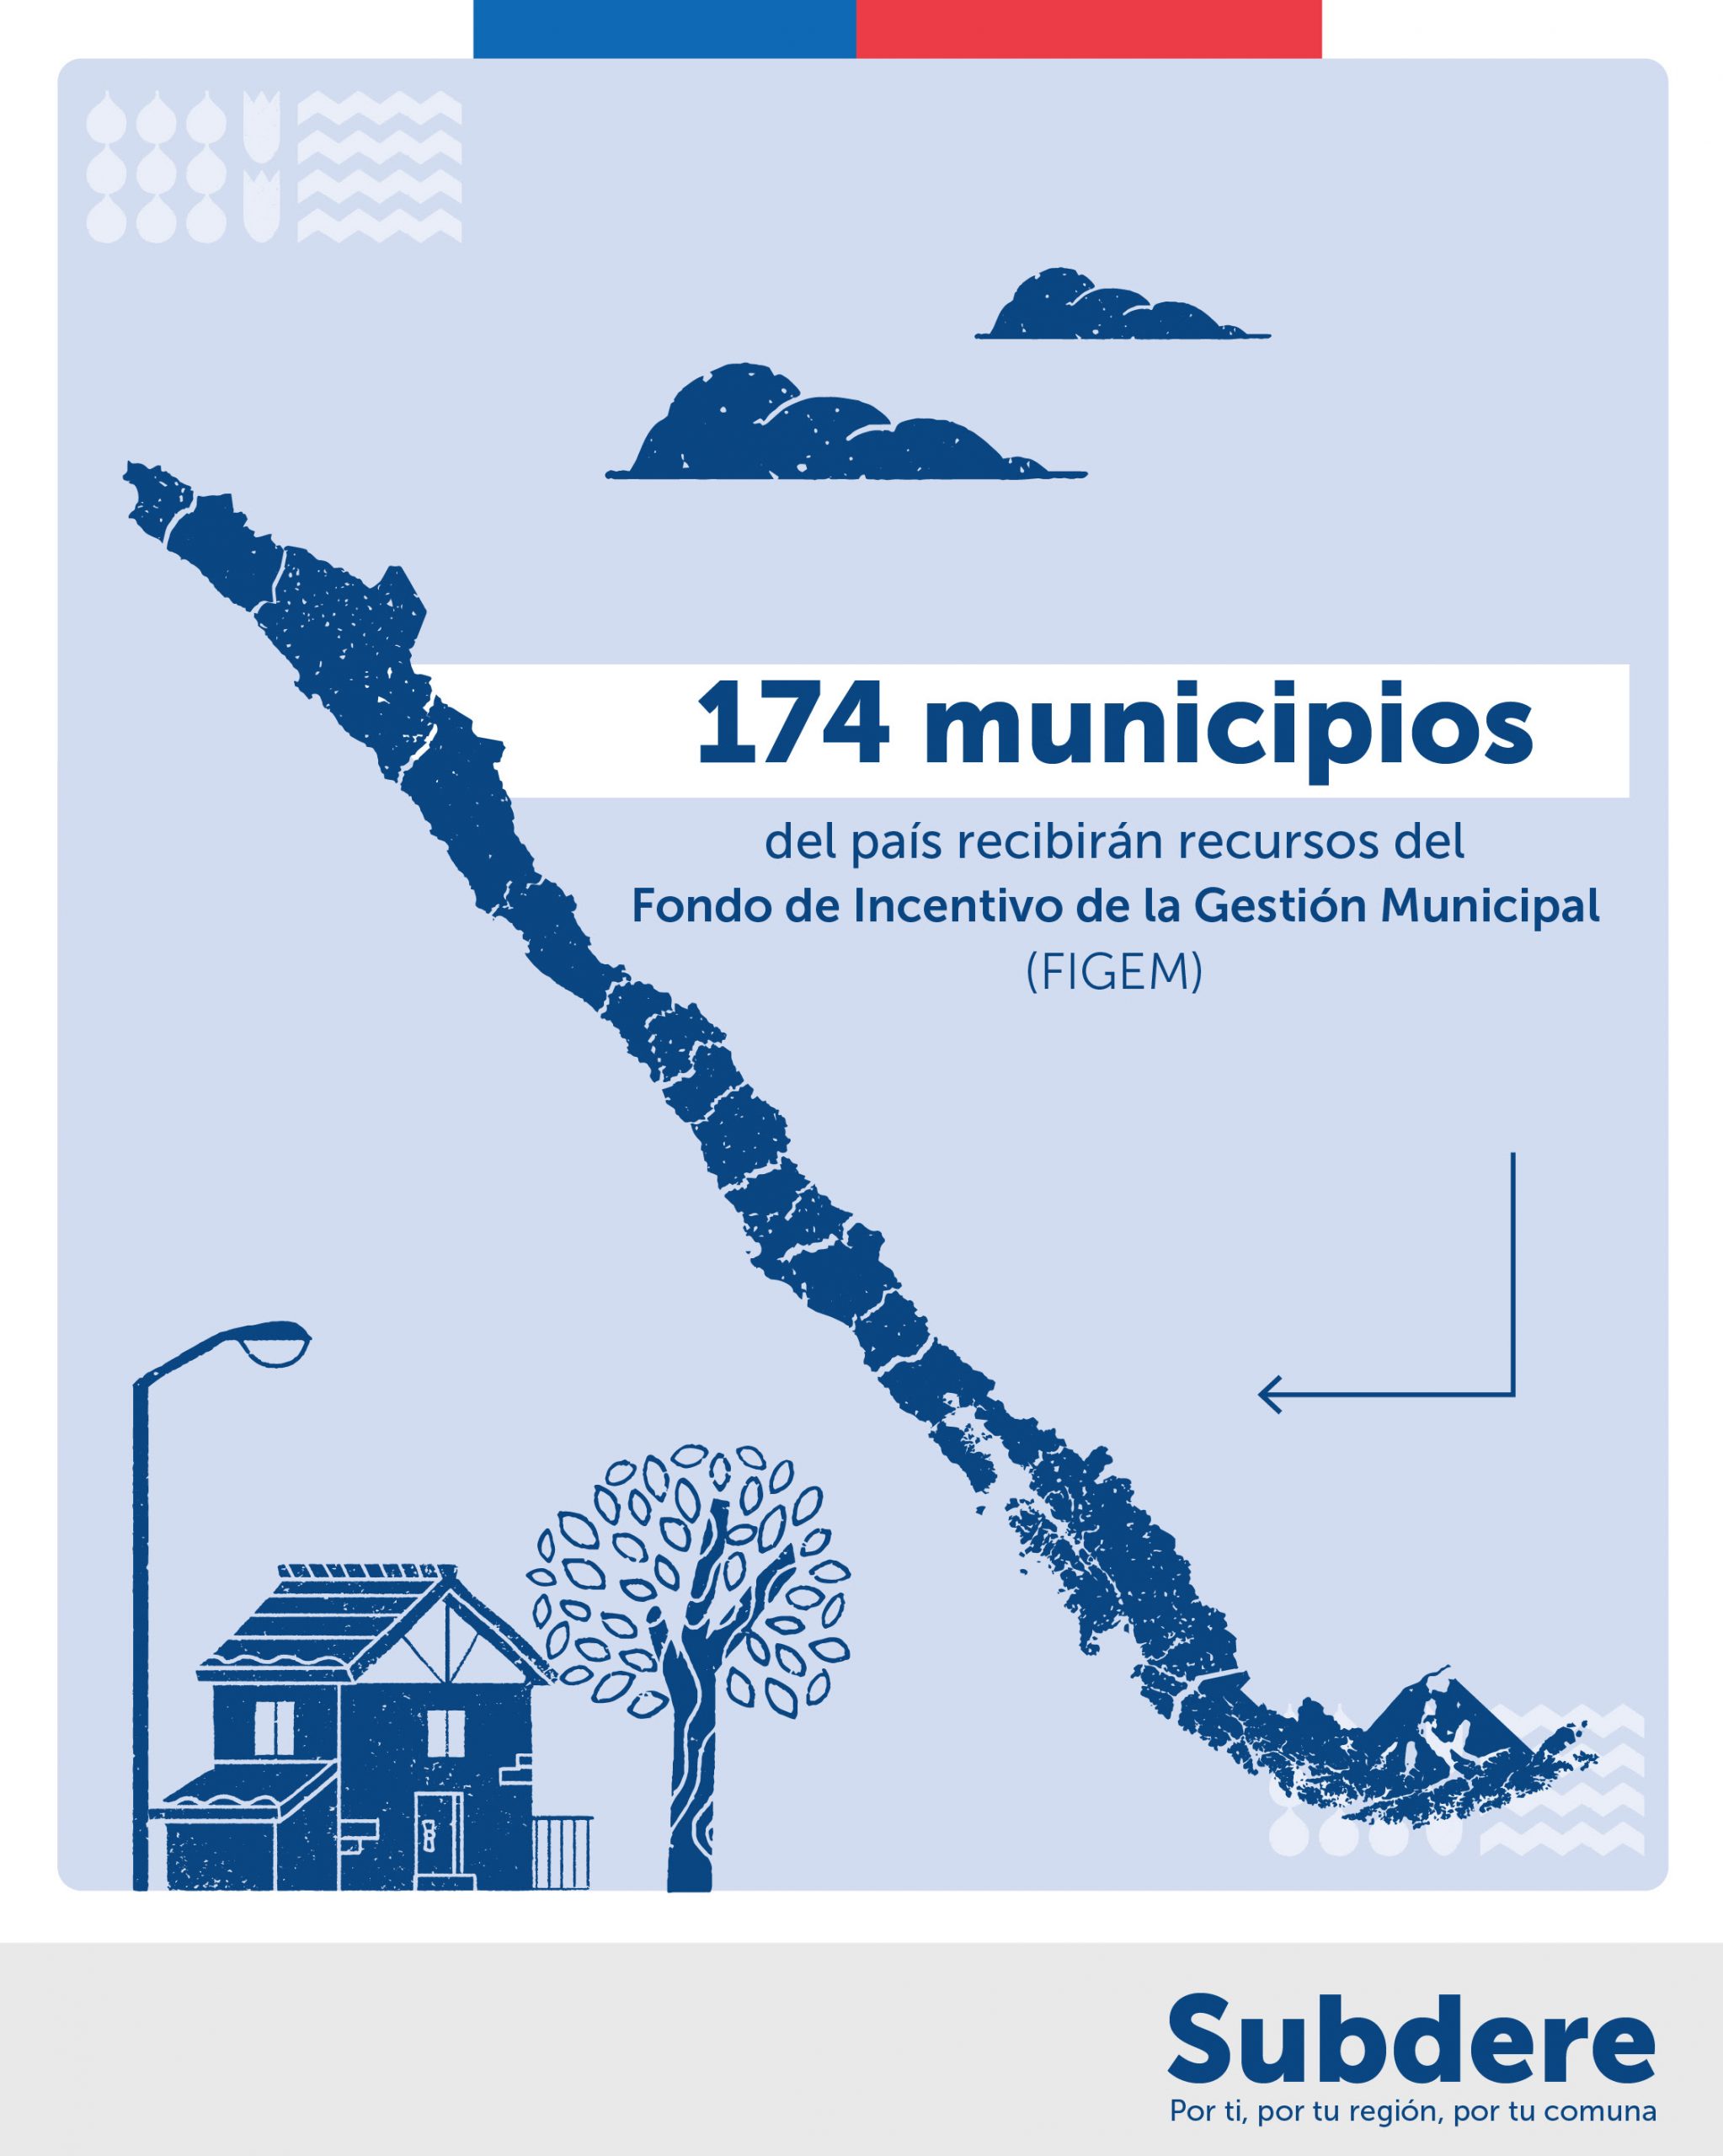 SUBDERE comenzó transferencia a 174 municipios destacados en gestión, entre los cuales Río Verde en la región de Magallanes